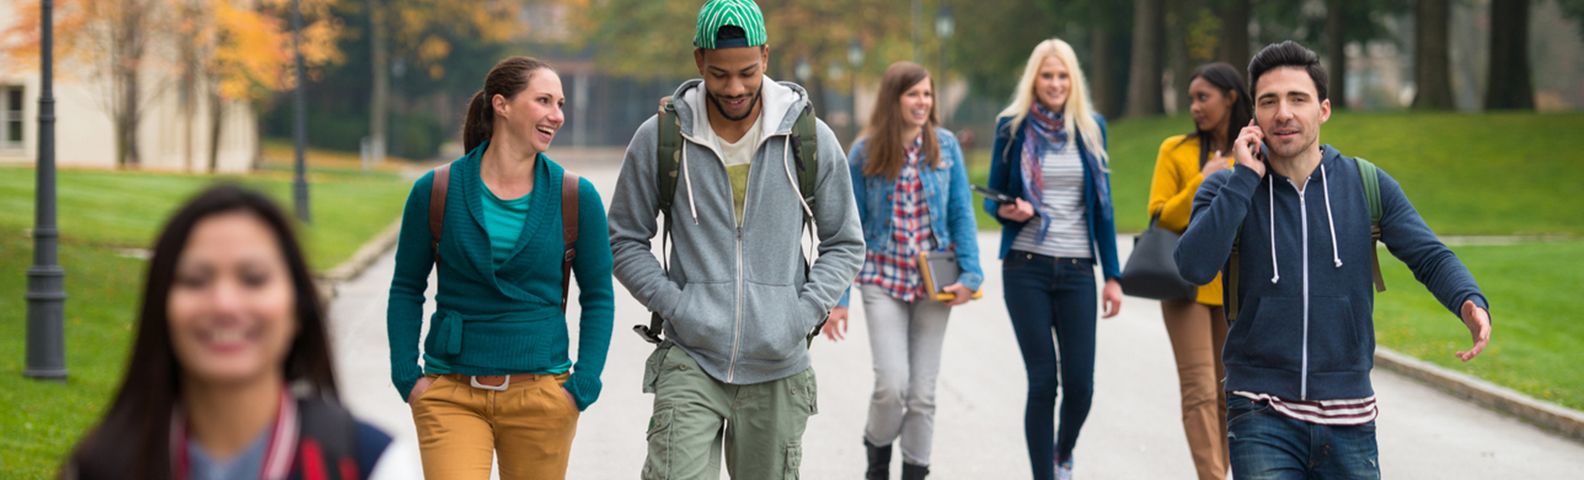 En grupp av studenter som promenerar på ett Campus-område